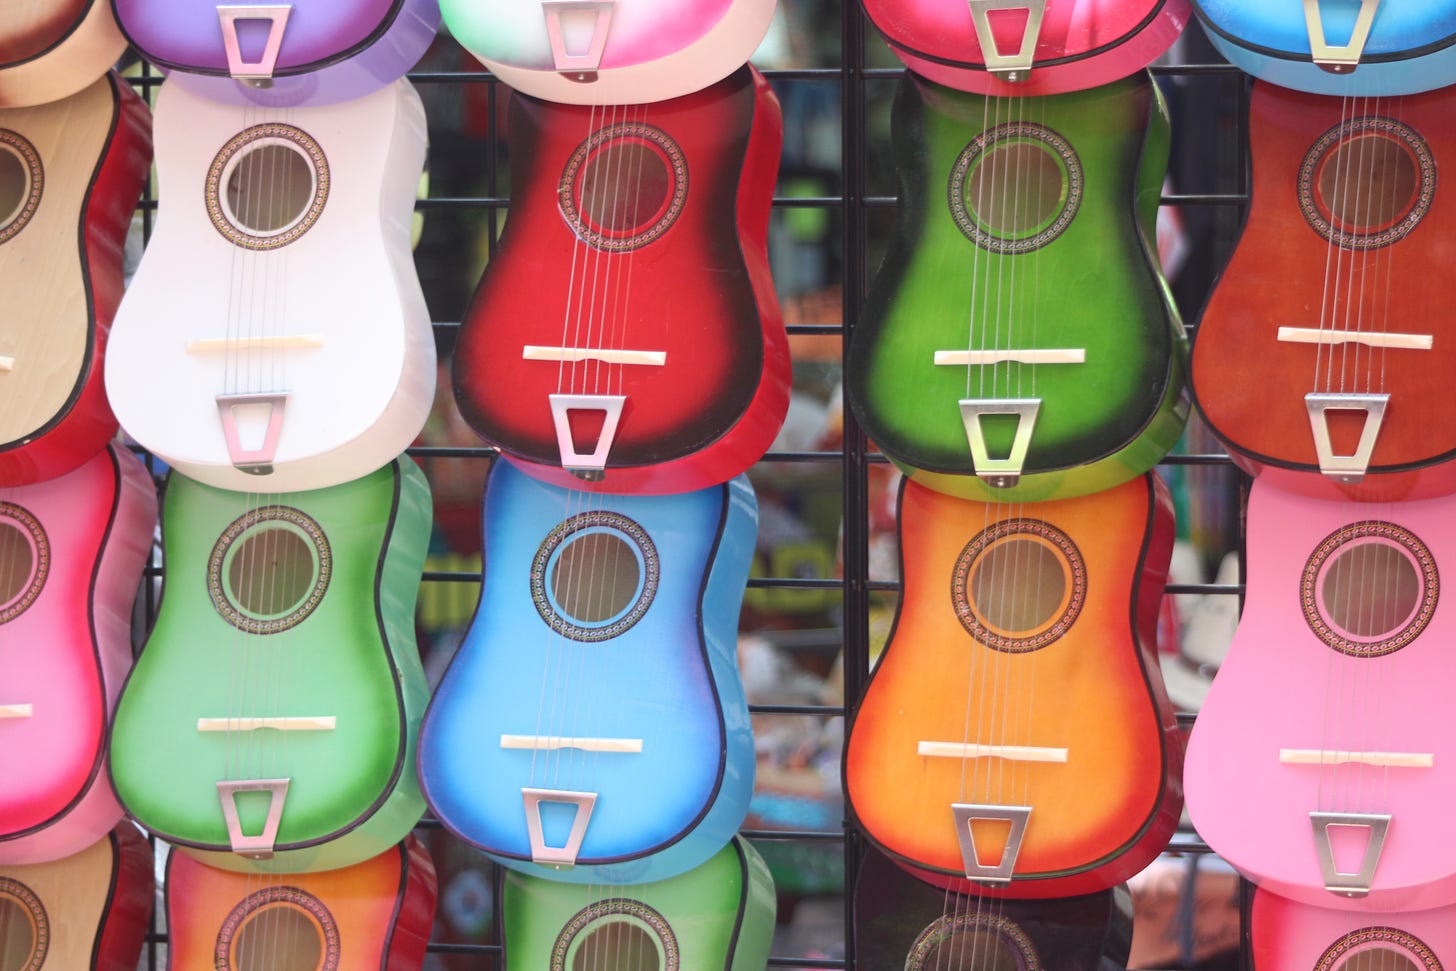 Lots of colourful ukuleles